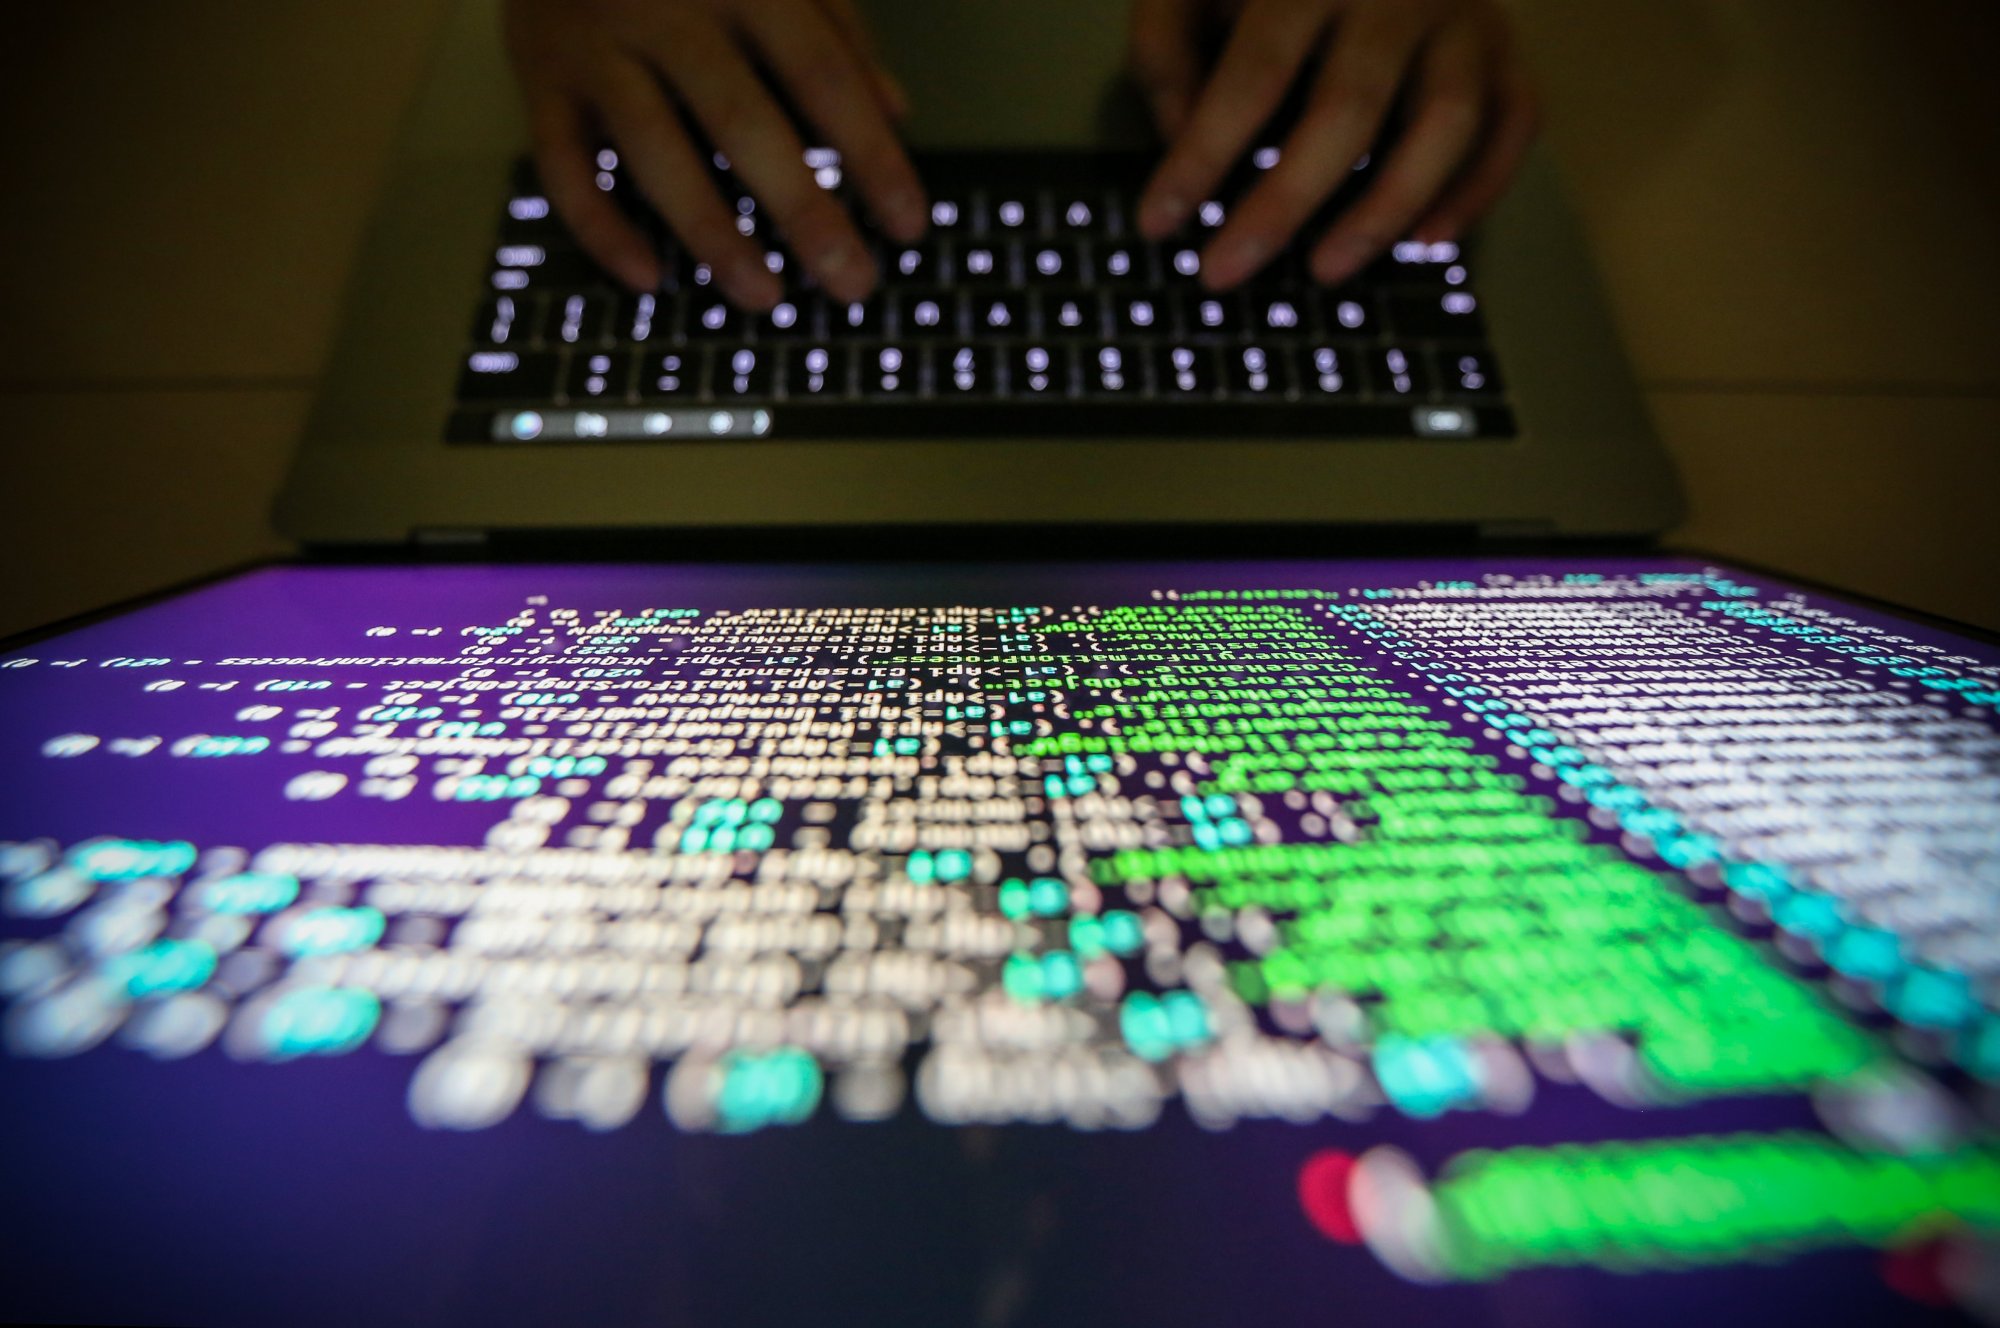 Κυβερνοεπιθέσεις: Συμμαχία 40 χωρών δεσμεύεται να μην πληρώνει λύτρα για ransomware